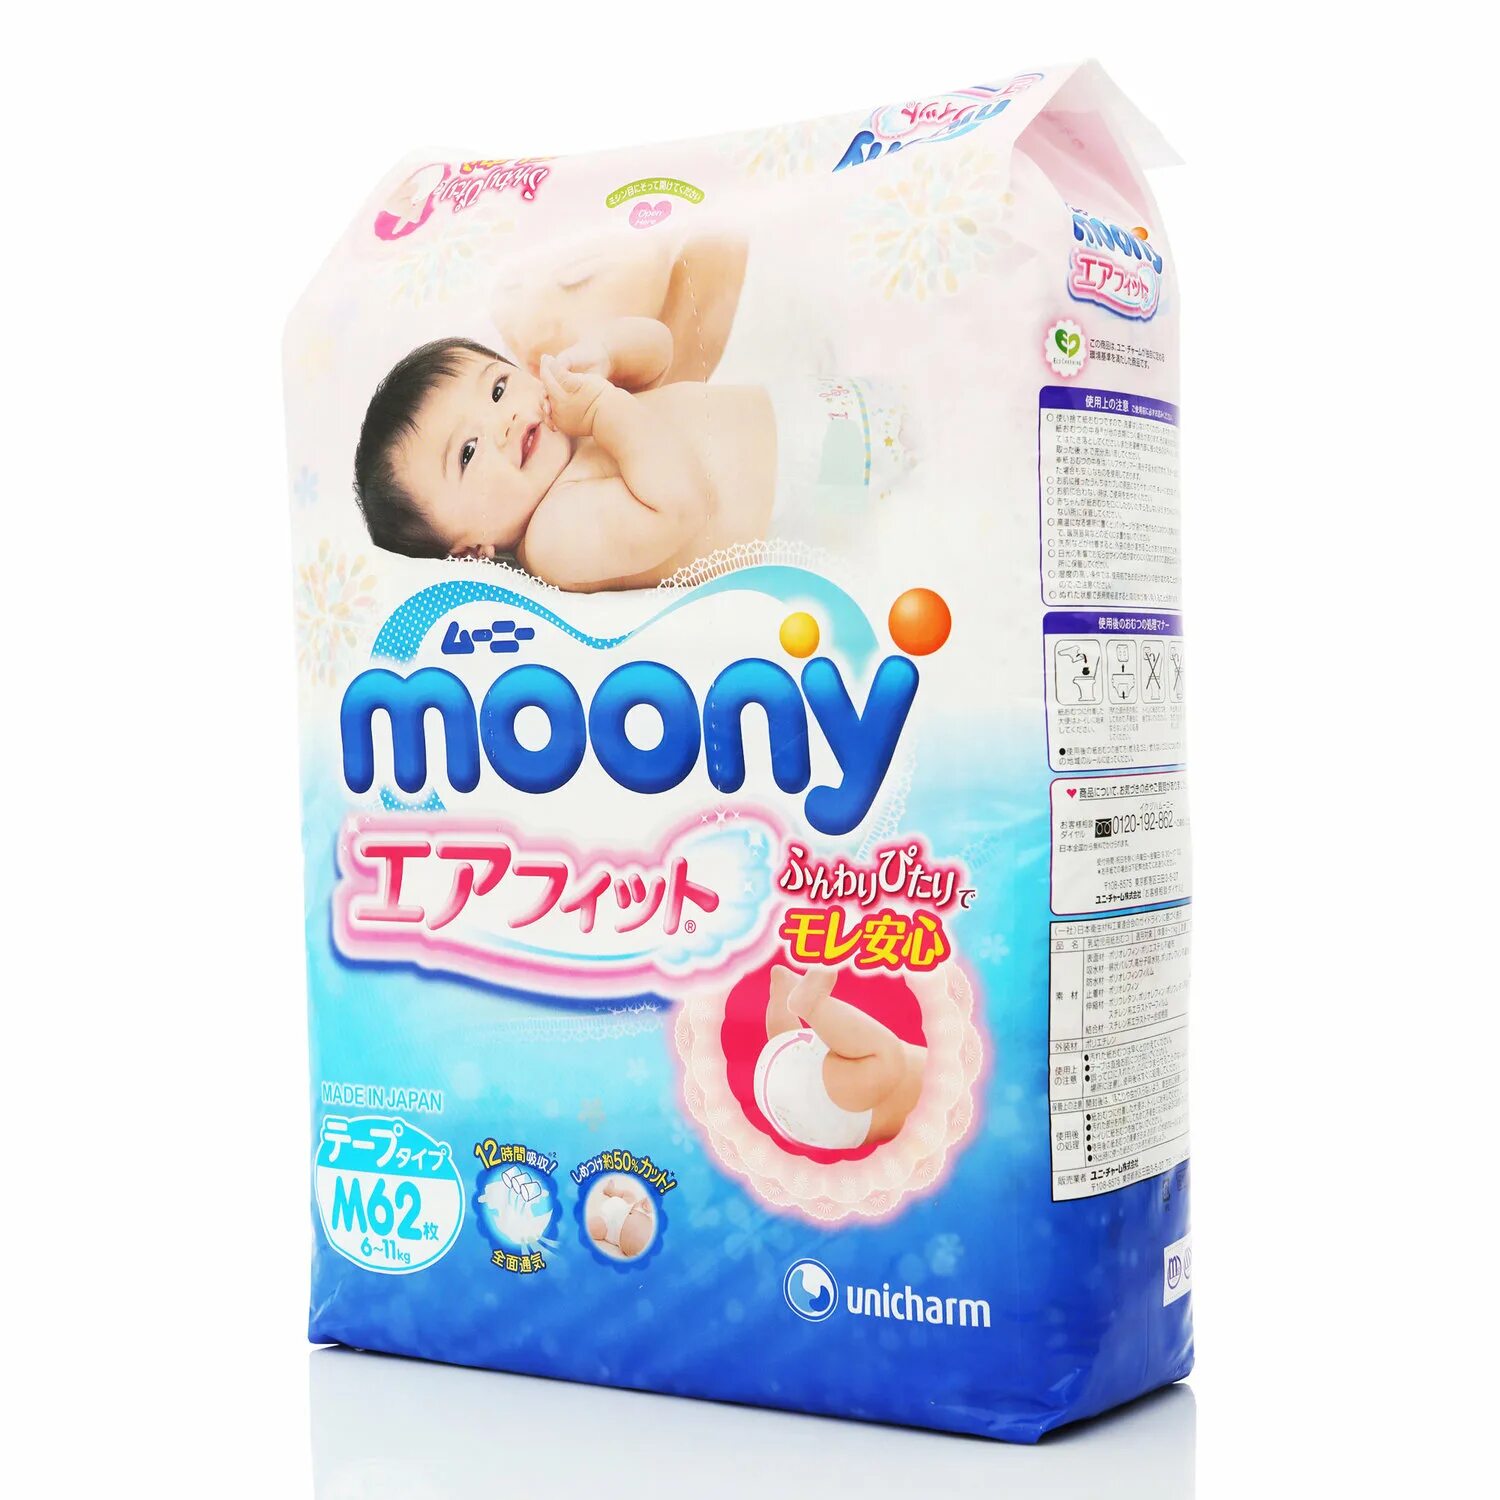 Moony. Moony 6-11. Moony подгузники Soft m 6-11 кг 62 шт. Moony подгузники 2. Подгузники Moony «Moony», 1.